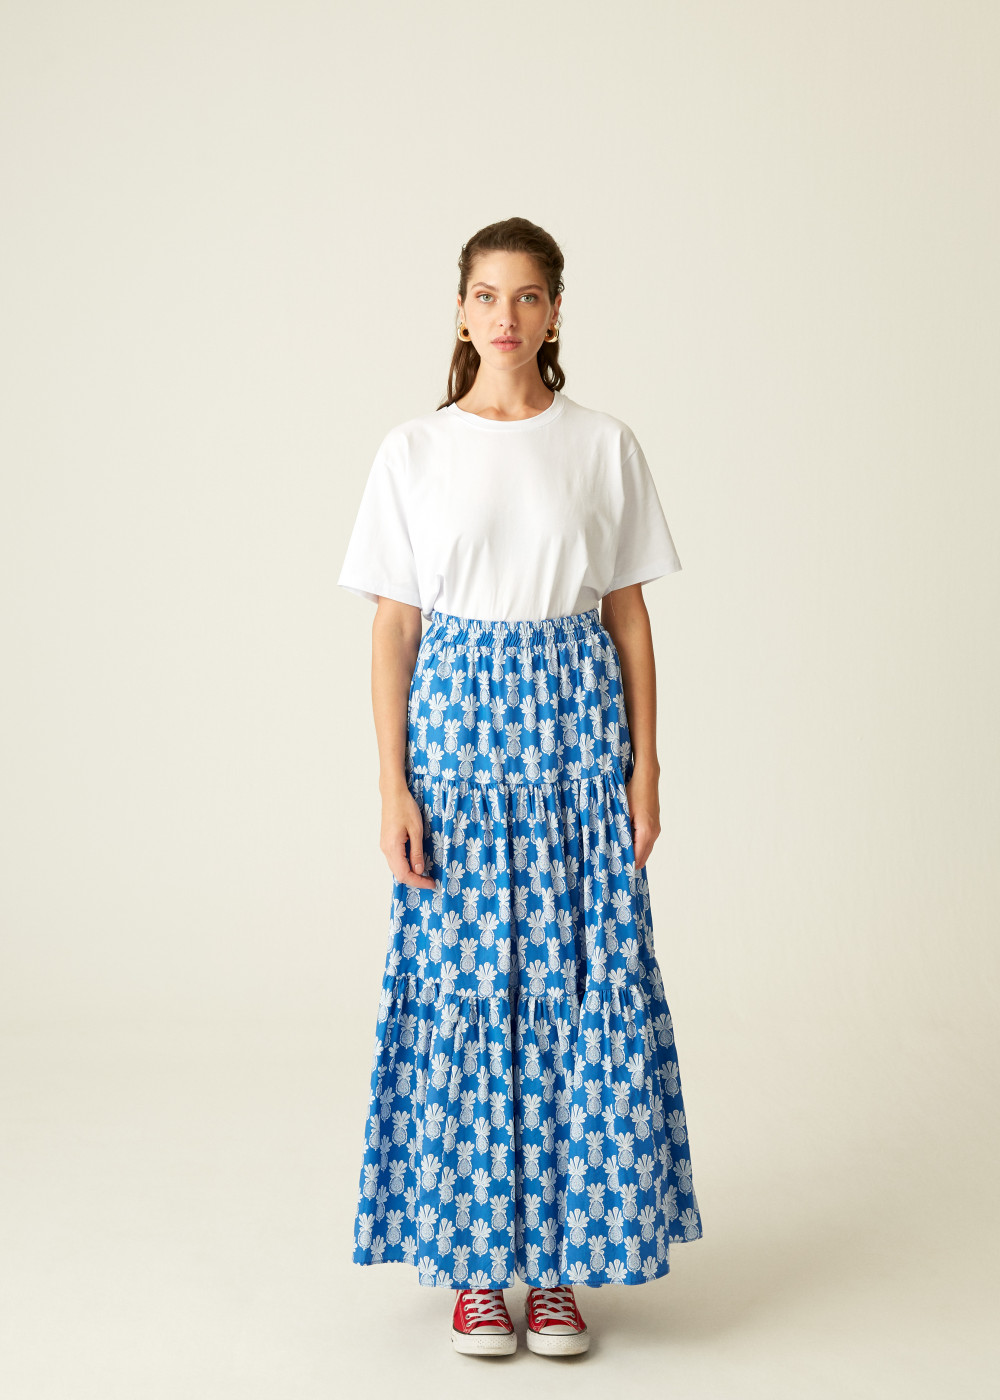 Pineapple Patterned Skirt